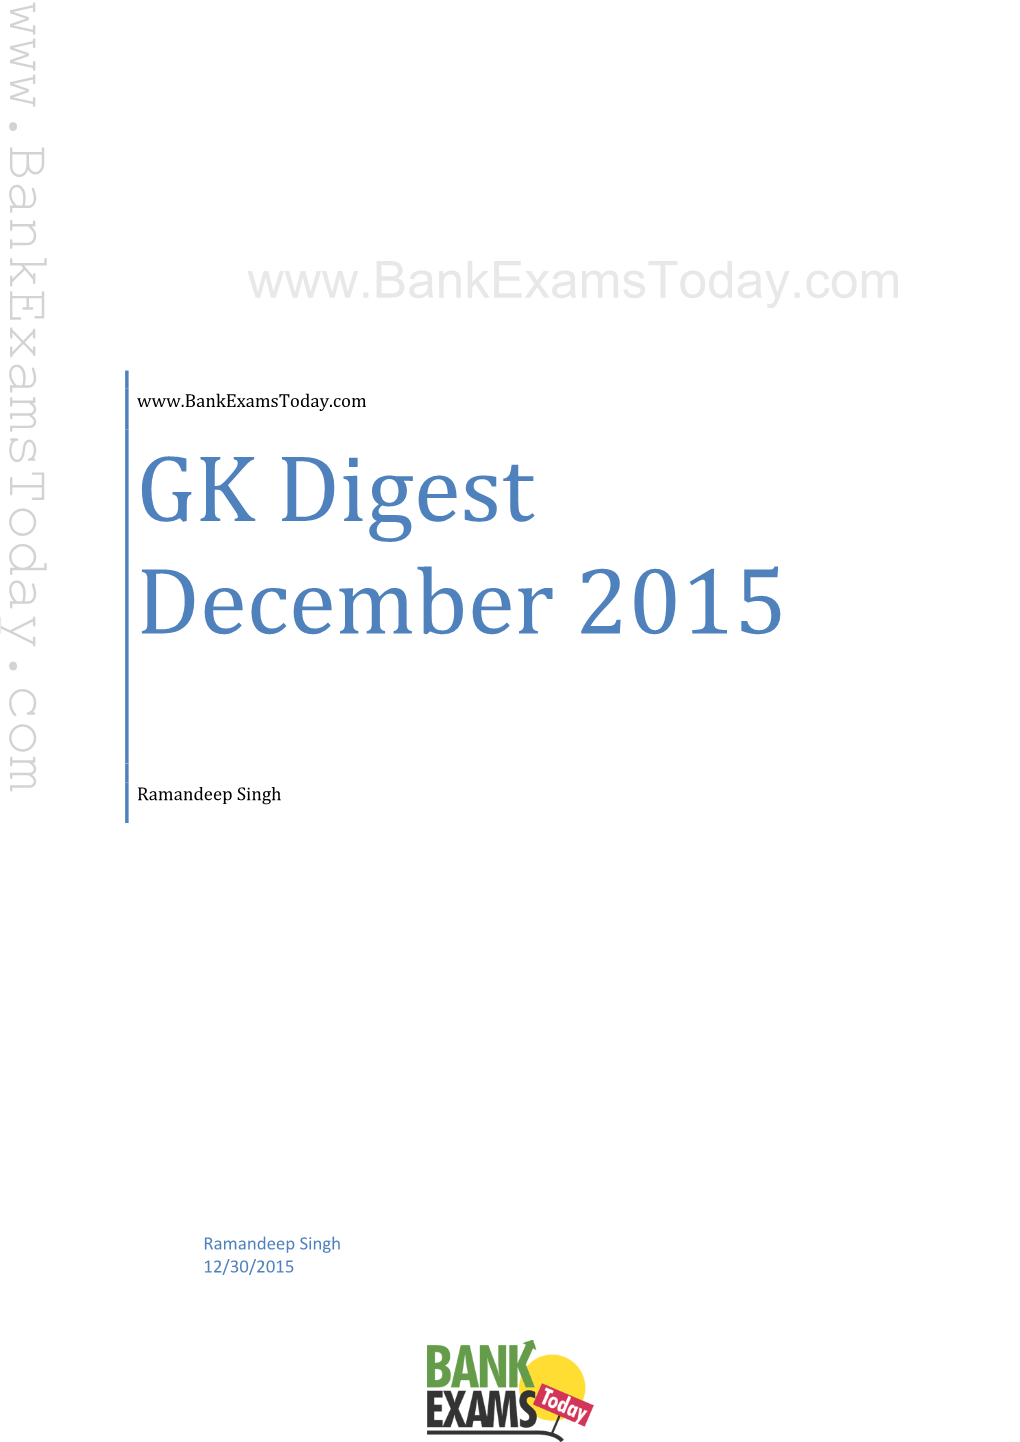 GK Digest December 2015